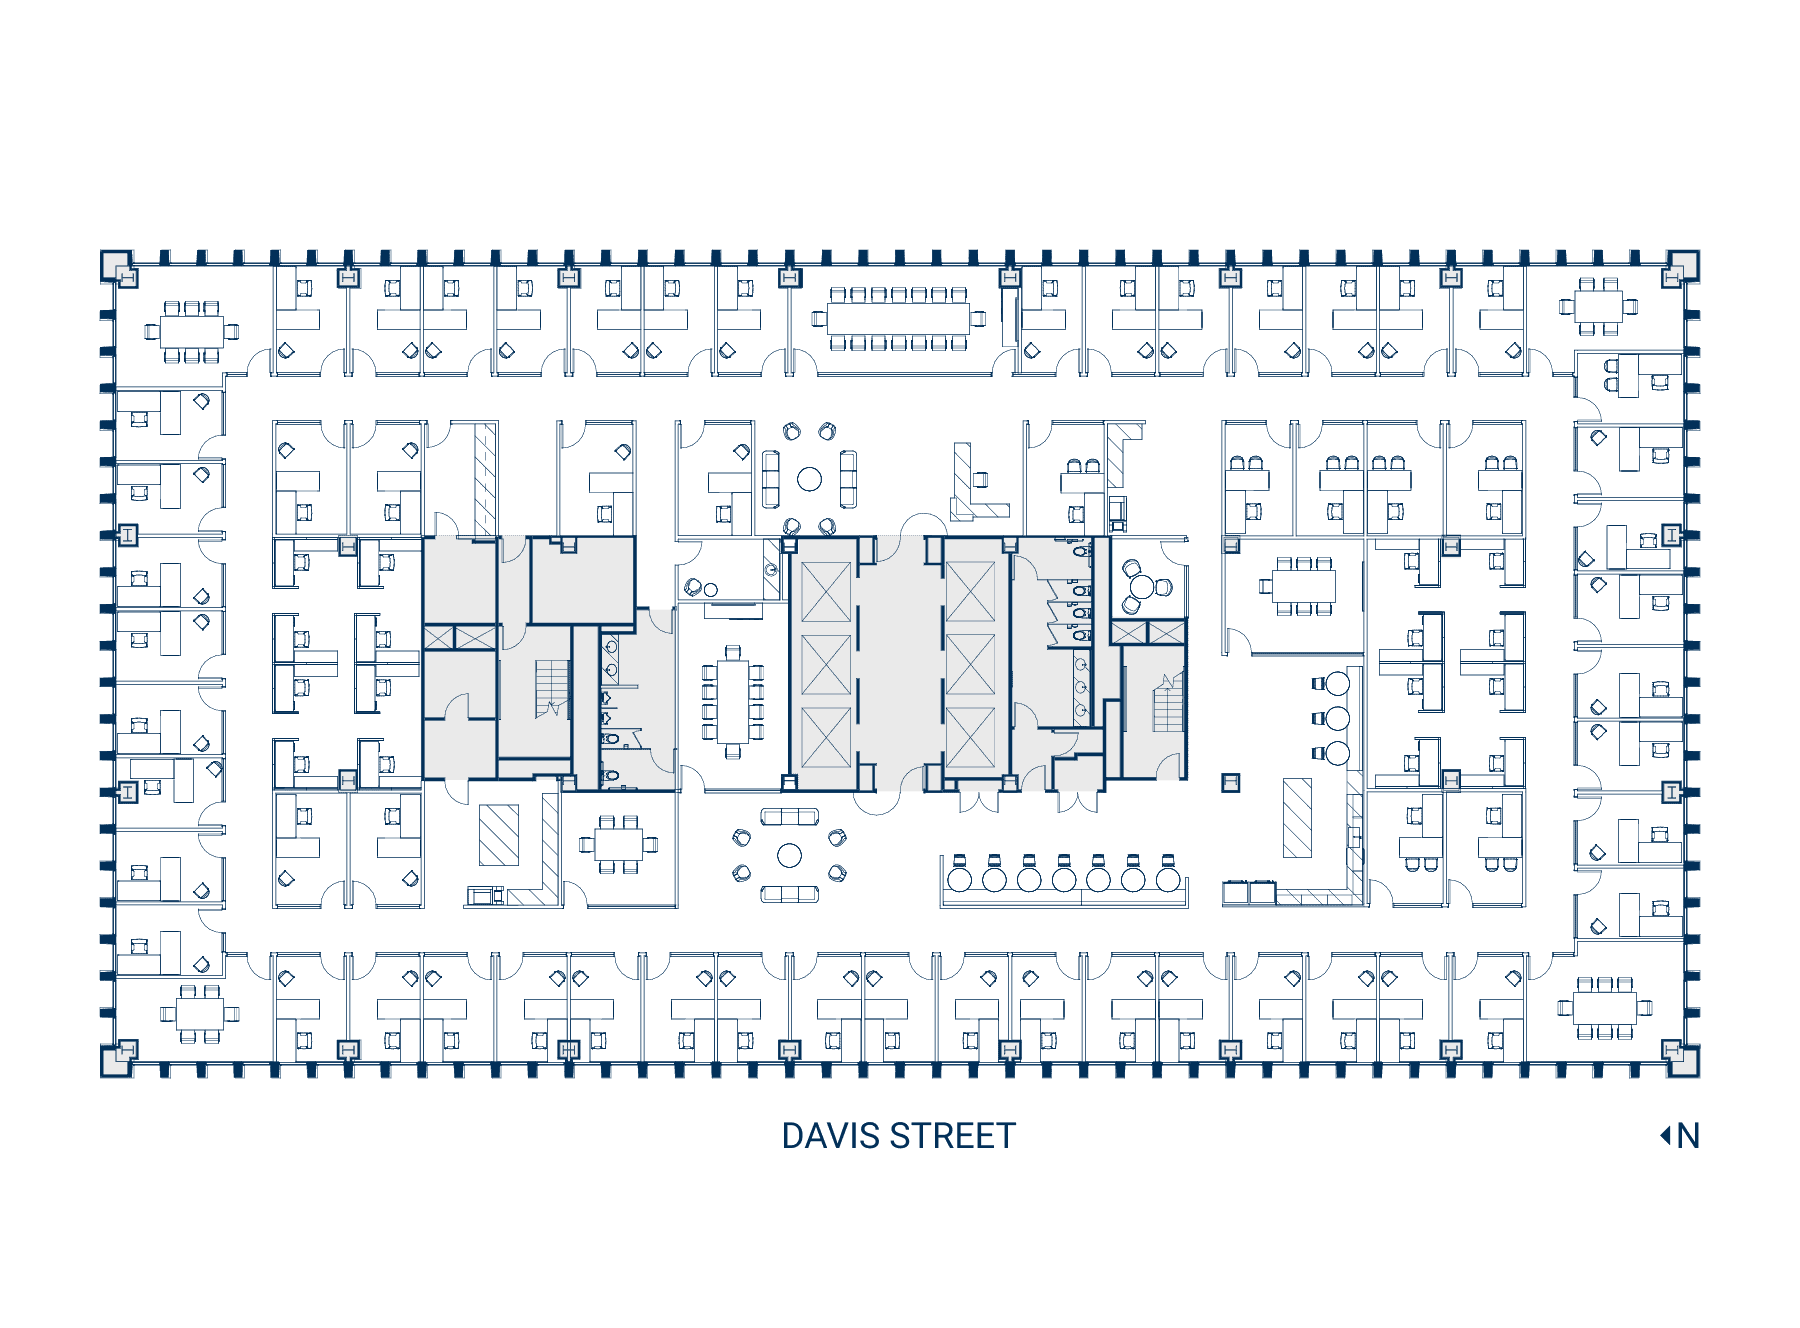 Floor 35 Suite 3500 Floor Plan - Hypothetical Private Office (Web)